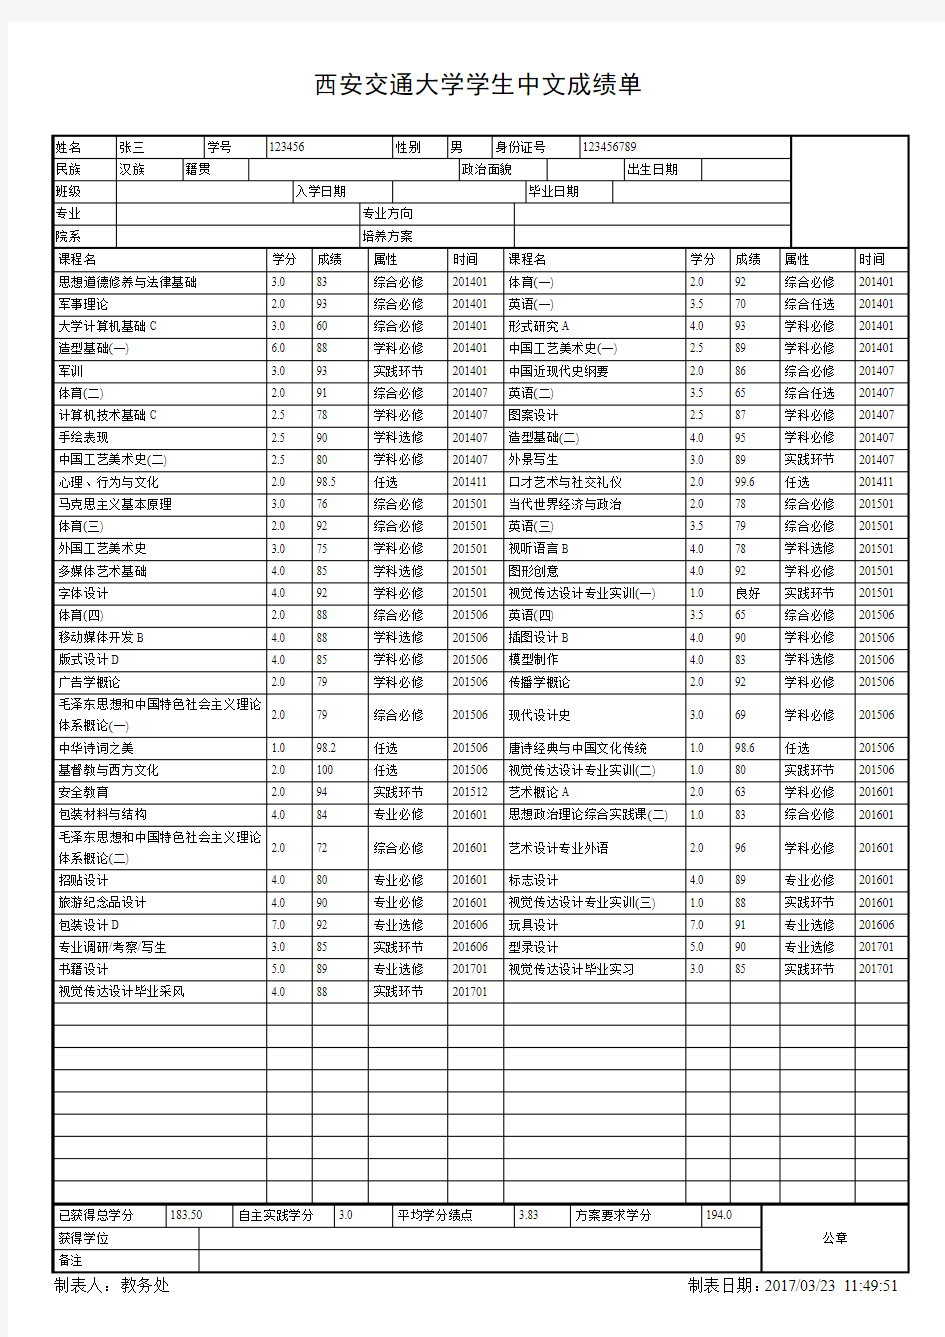 [最新] 西安交通大学学生中文成绩单 表格模板打印